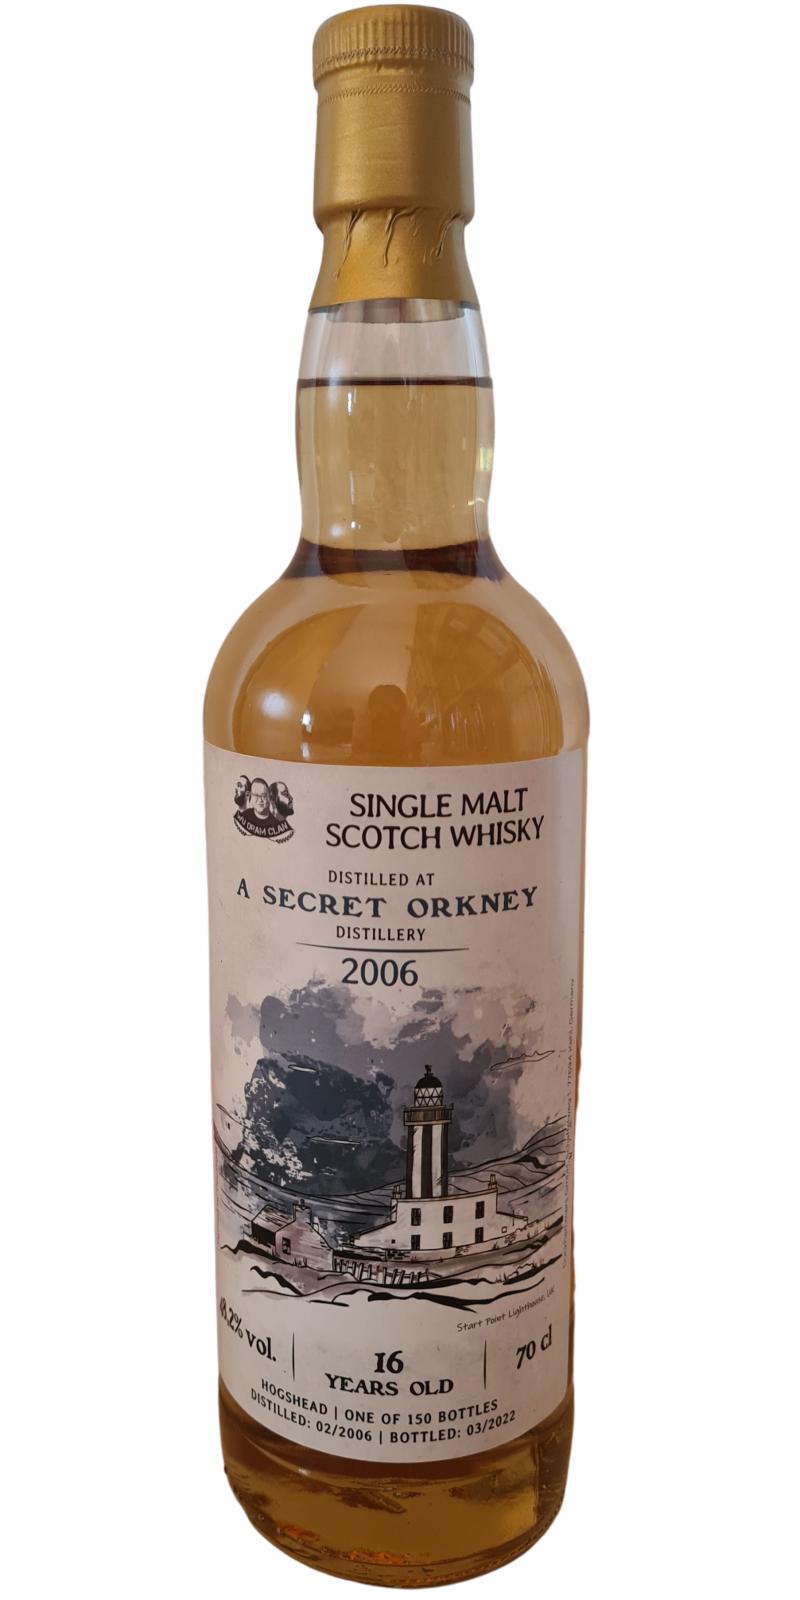 A Secret Orkney Distillery 2006 DRFS